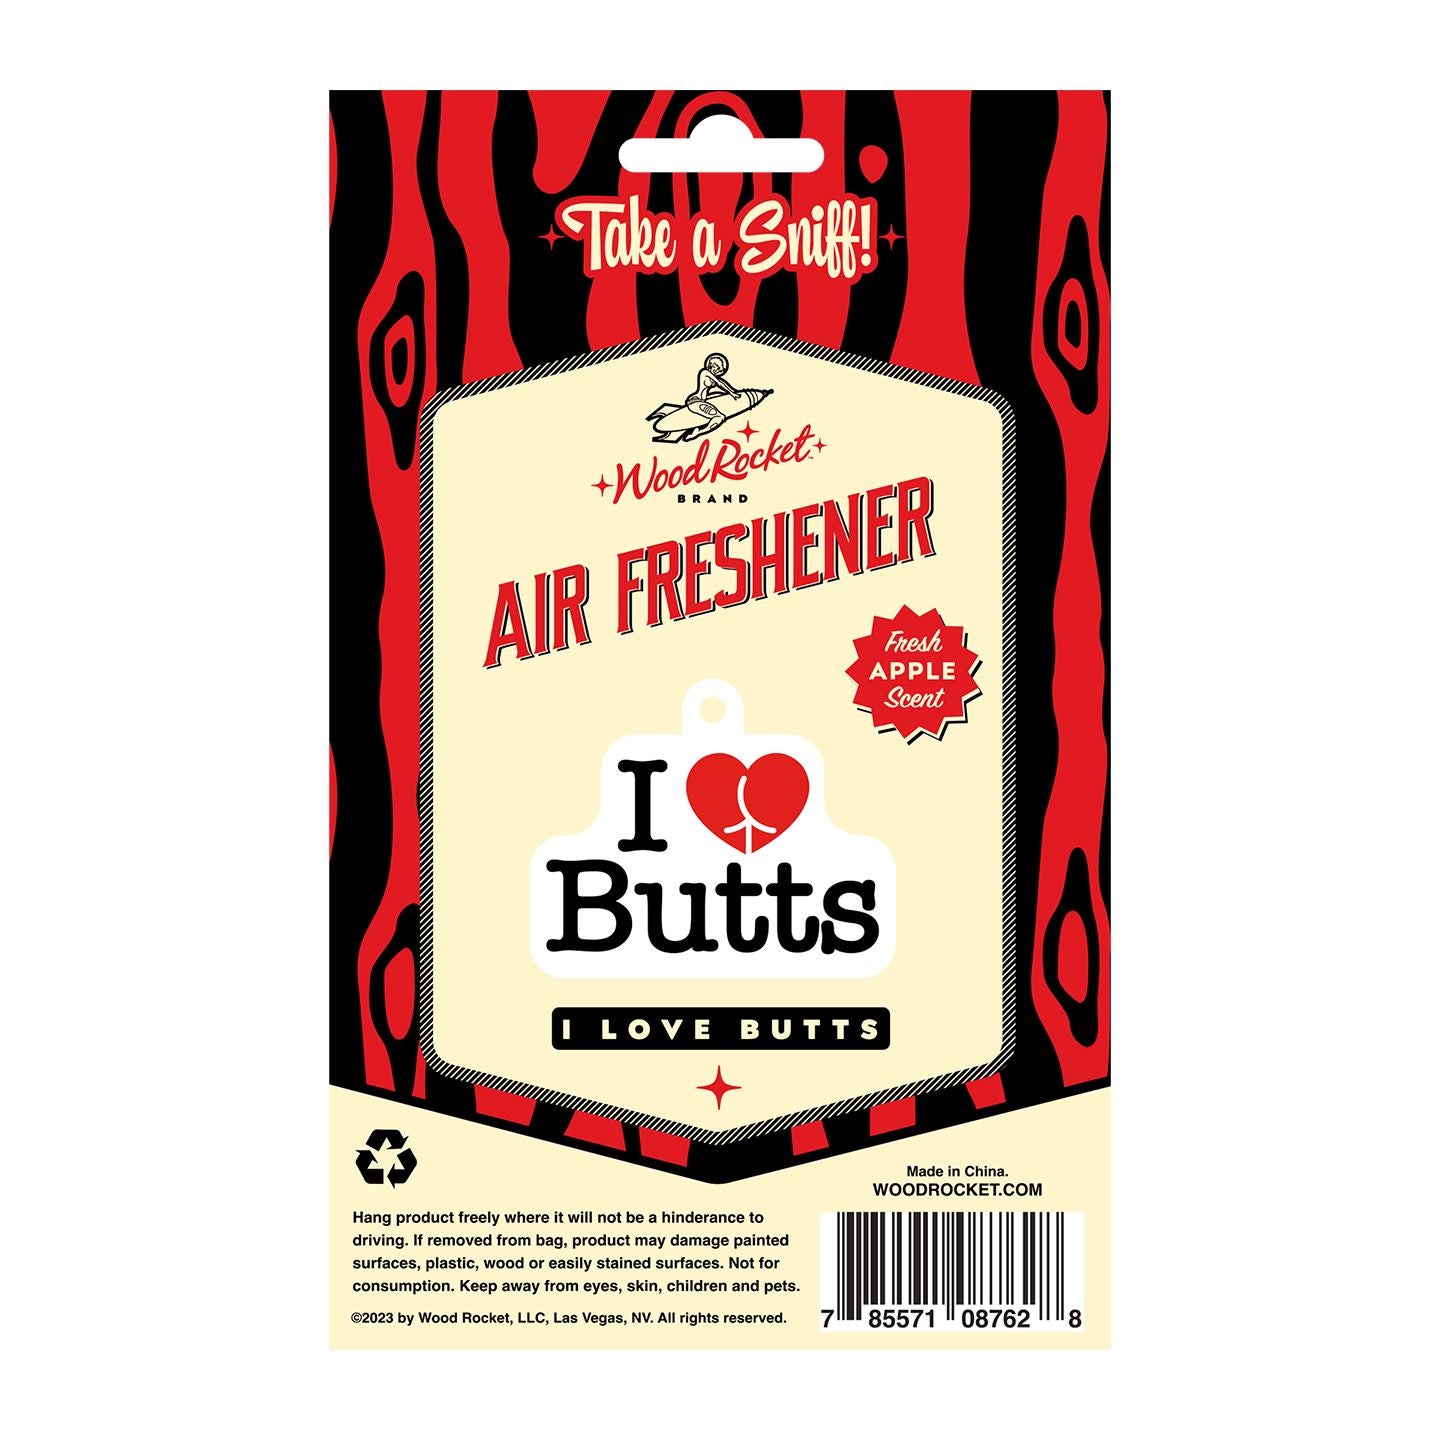 I Love Butts Air Freshner